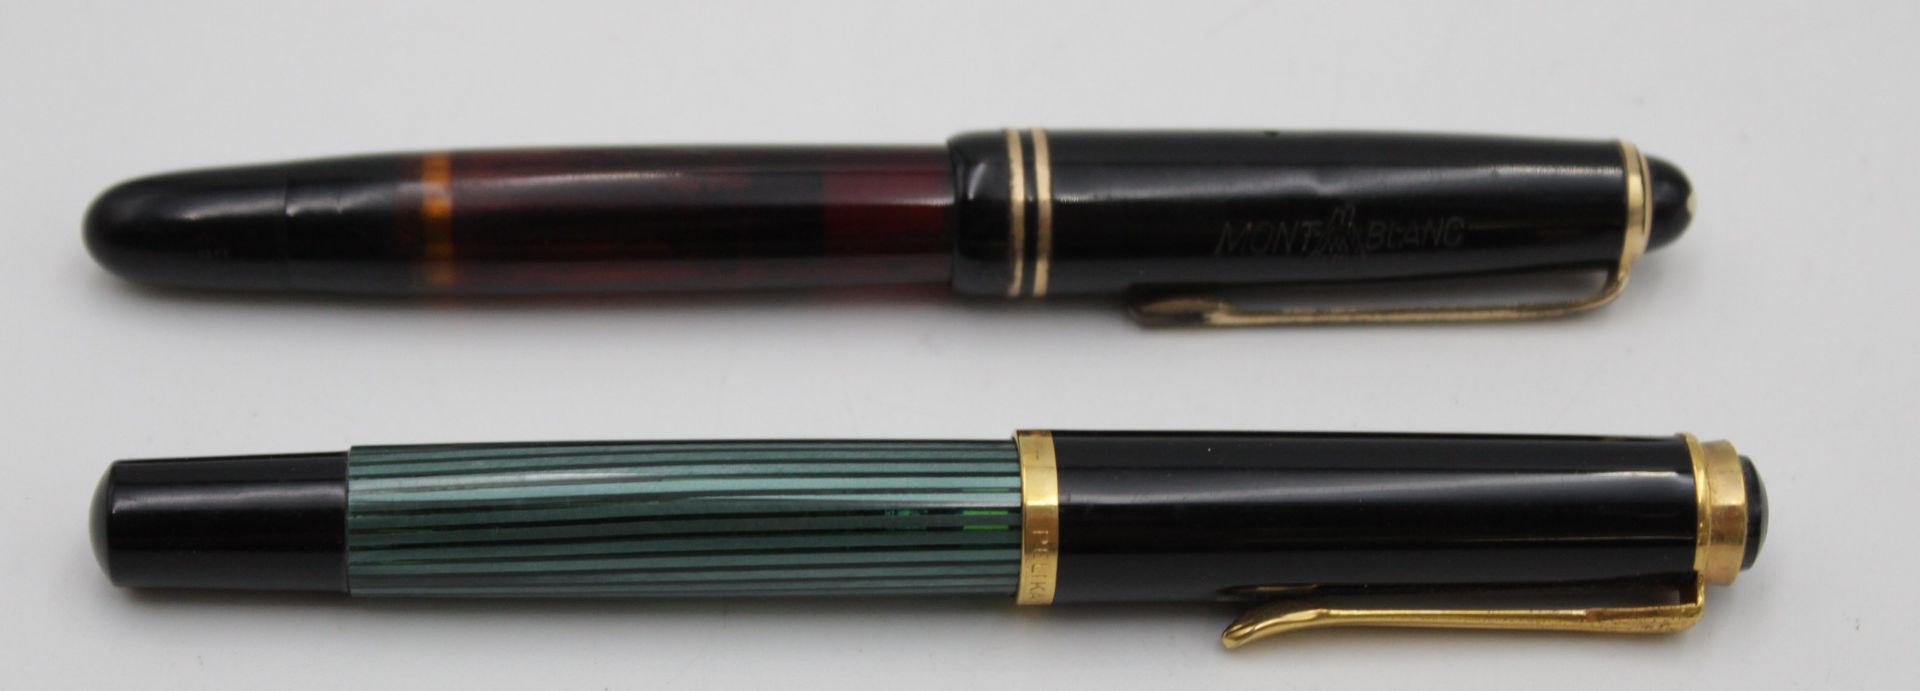 2x alte Füller, Montblanc u. Pelikan, je mit 585er GG Feder, Gebrauchsspuren